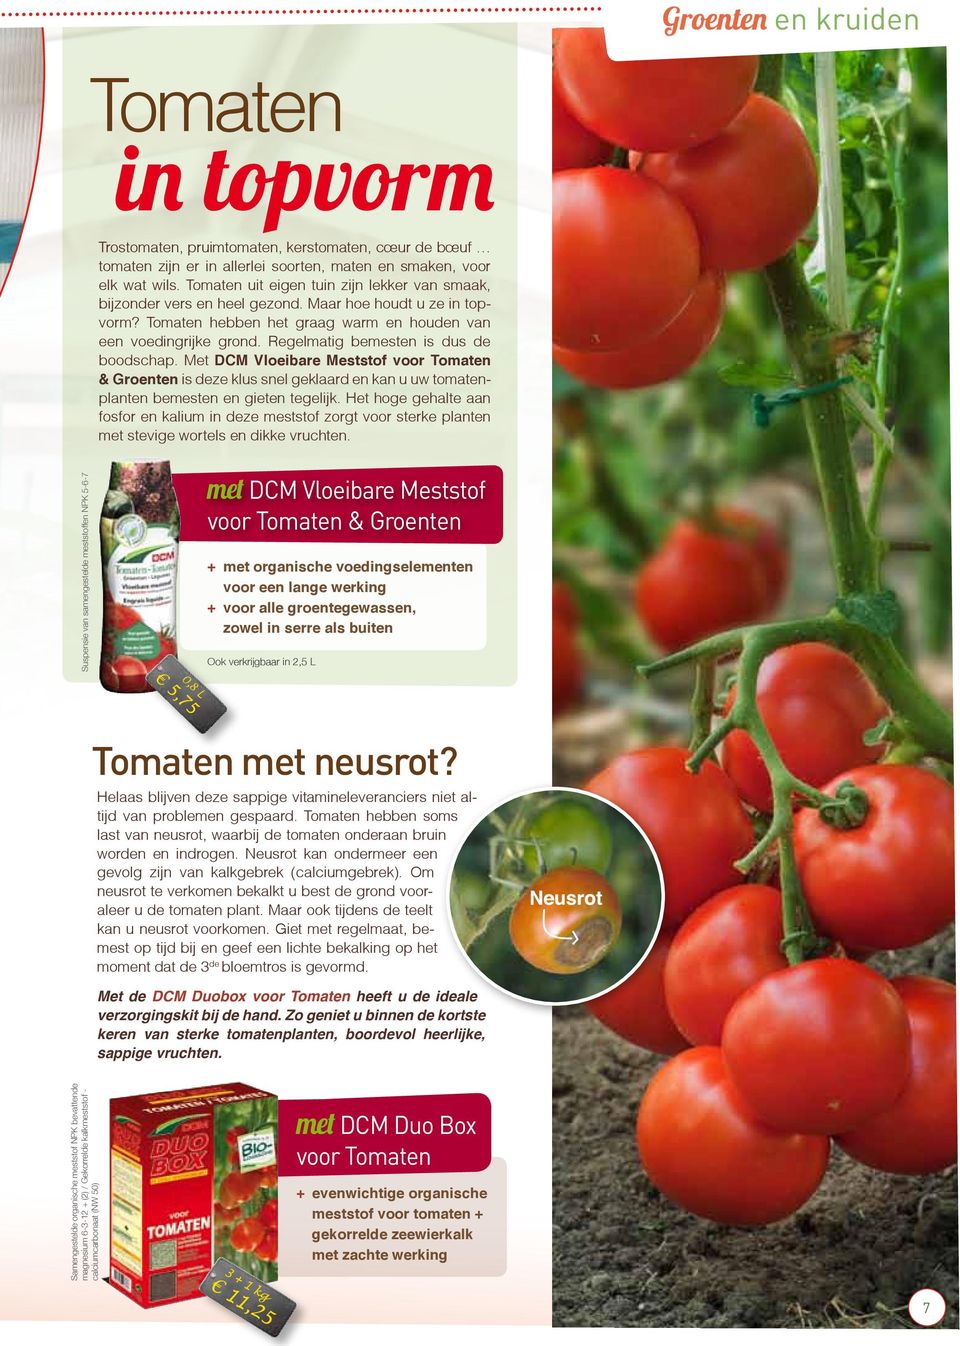 Regelmatig bemesten is dus de boodschap. Met DCM Vloeibare Meststof voor Tomaten & Groenten is deze klus snel geklaard en kan u uw tomatenplanten bemesten en gieten tegelijk.